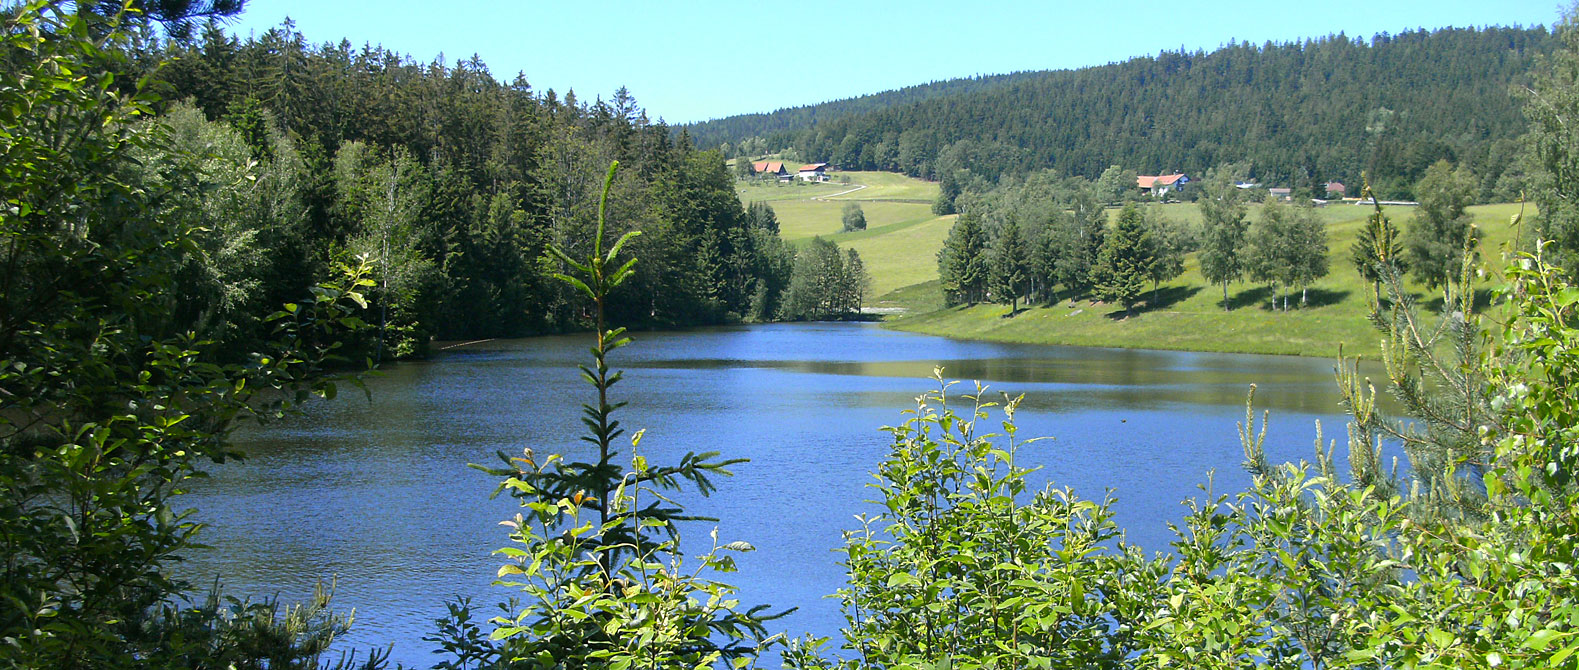 Urlaub im Dreiländereck Bayerischer Wald